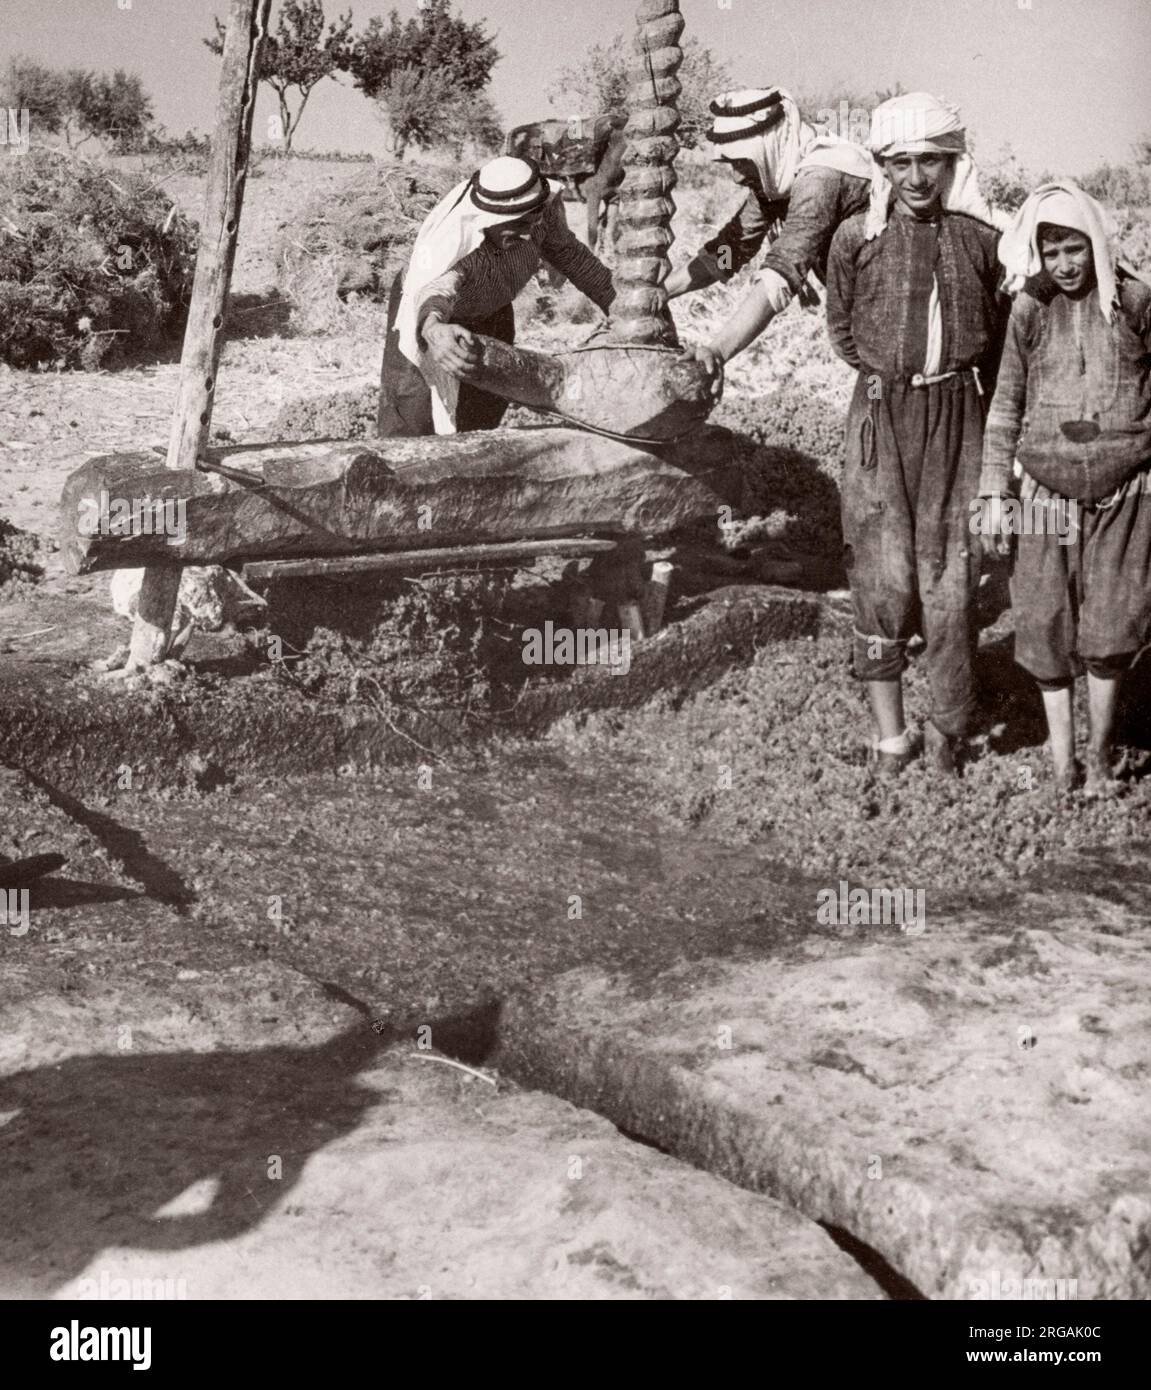 1943 Syrie - faire bouillir des raisins à Make Arak liqour Photographie par un officier de recrutement de l'armée britannique stationnés en Afrique de l'est et au Moyen-Orient pendant la Seconde Guerre mondiale Banque D'Images